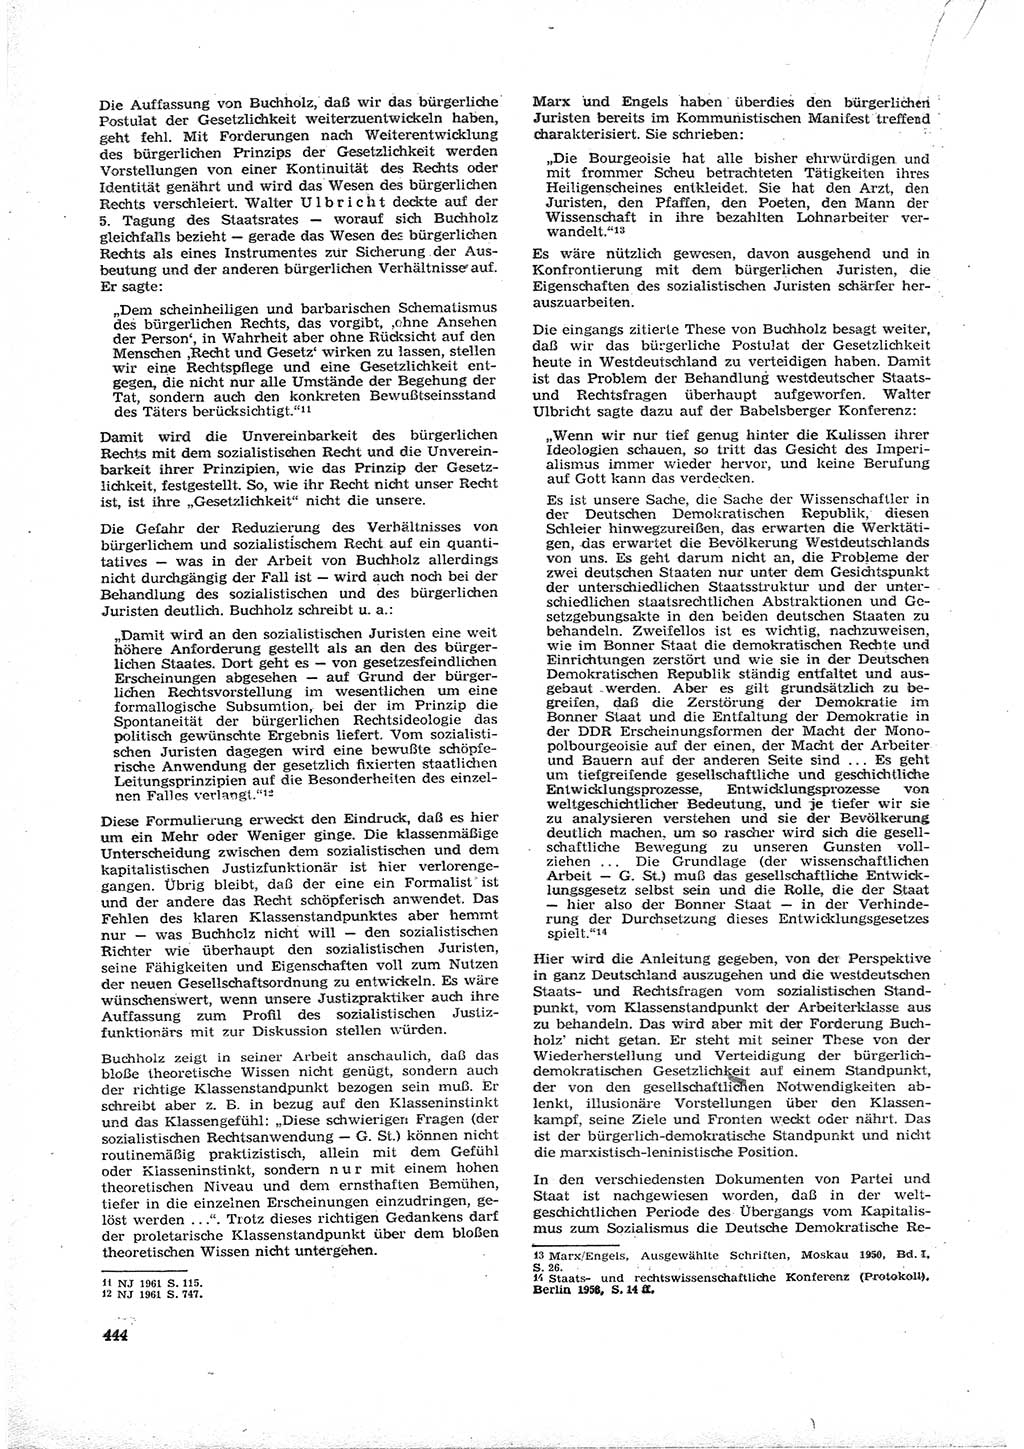 Neue Justiz (NJ), Zeitschrift für Recht und Rechtswissenschaft [Deutsche Demokratische Republik (DDR)], 16. Jahrgang 1962, Seite 444 (NJ DDR 1962, S. 444)